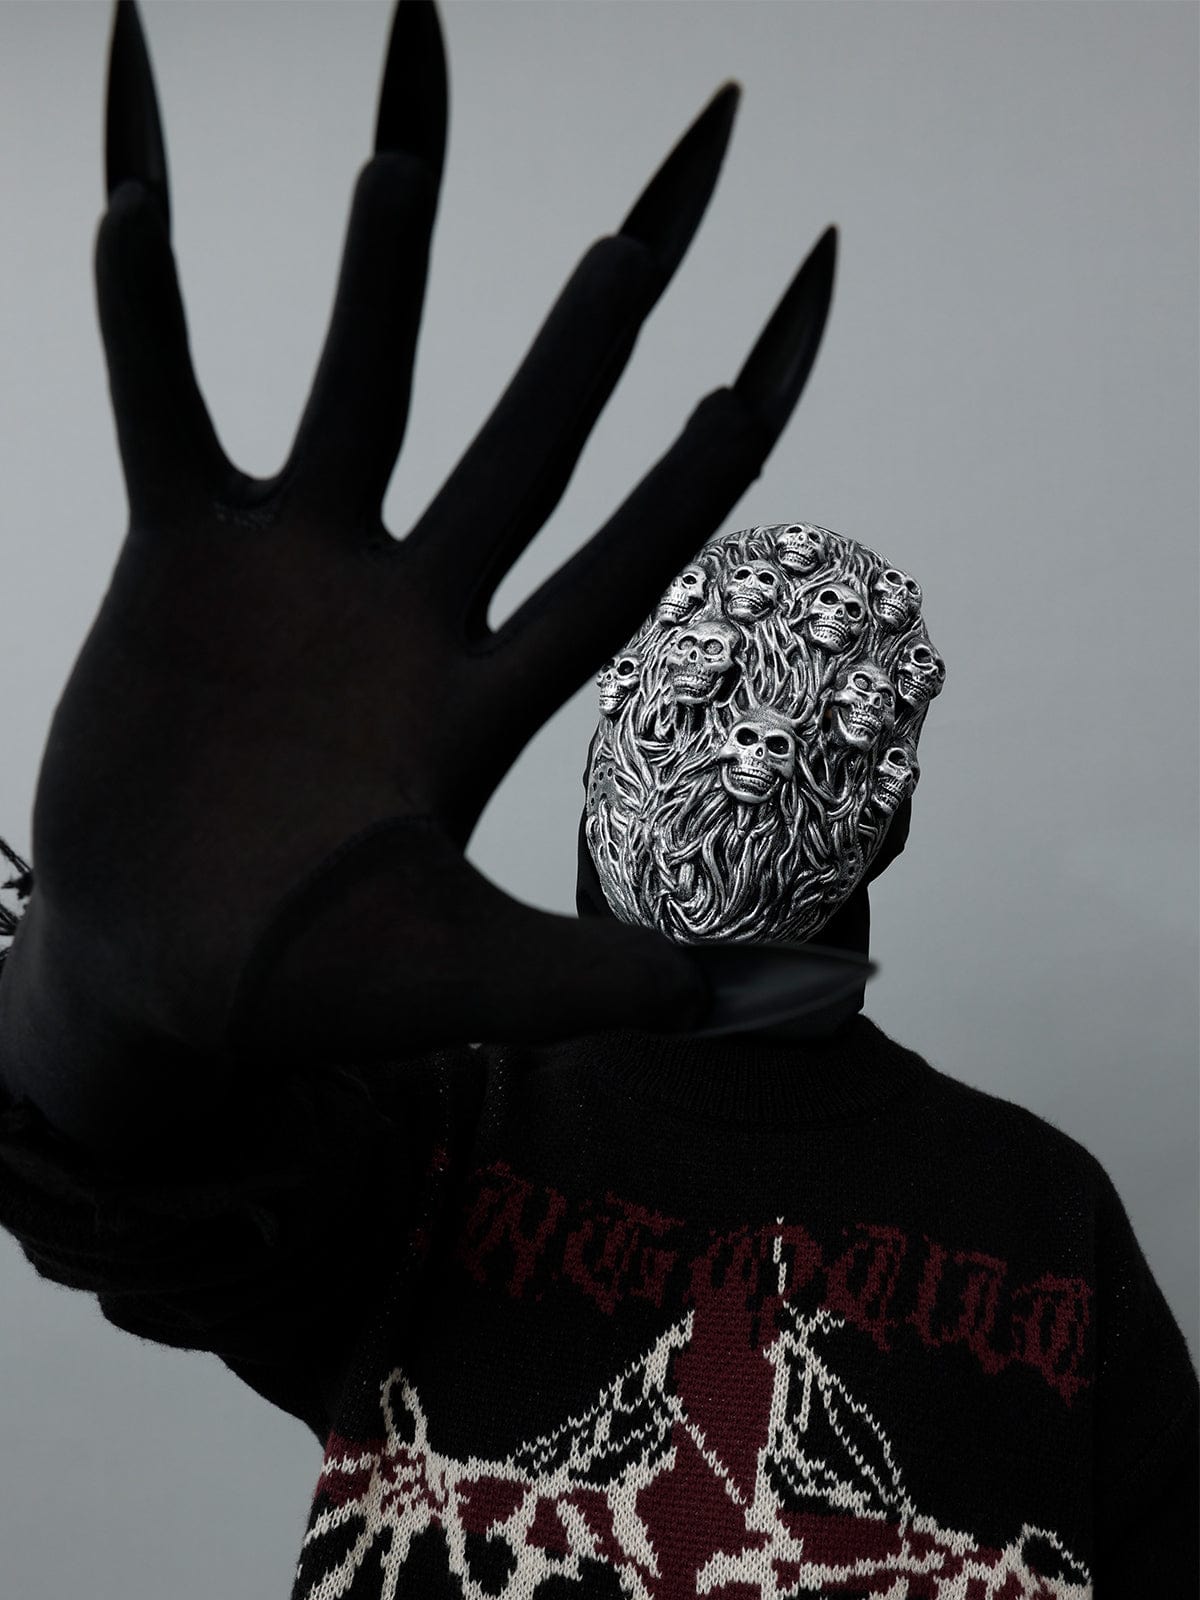 Gear Skull Mask